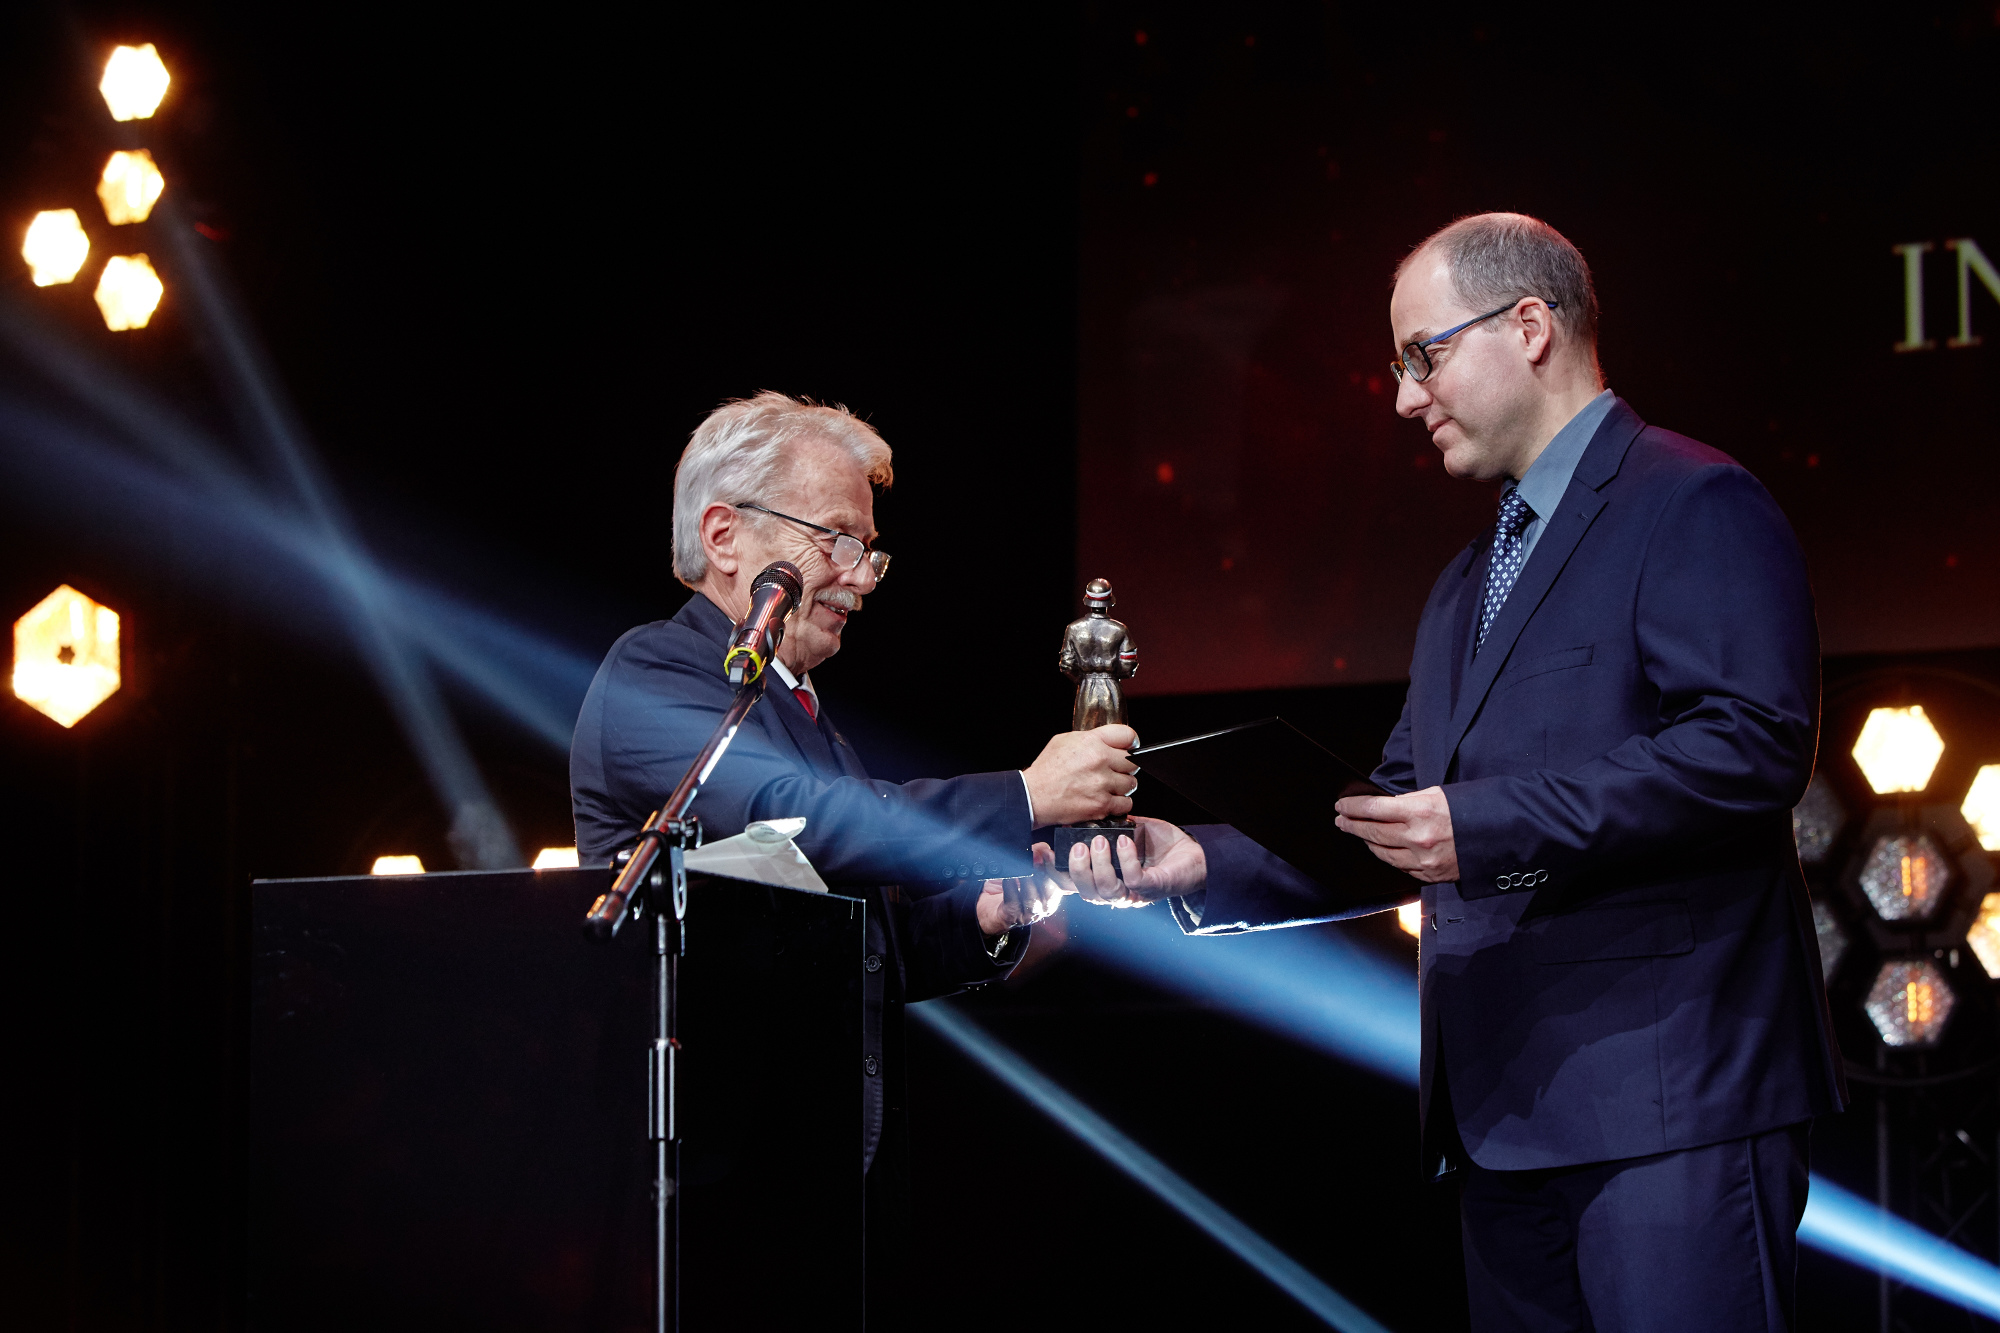 Nagroda_BohaterONy_2019_gala_fot_Michał_Moryl (12)